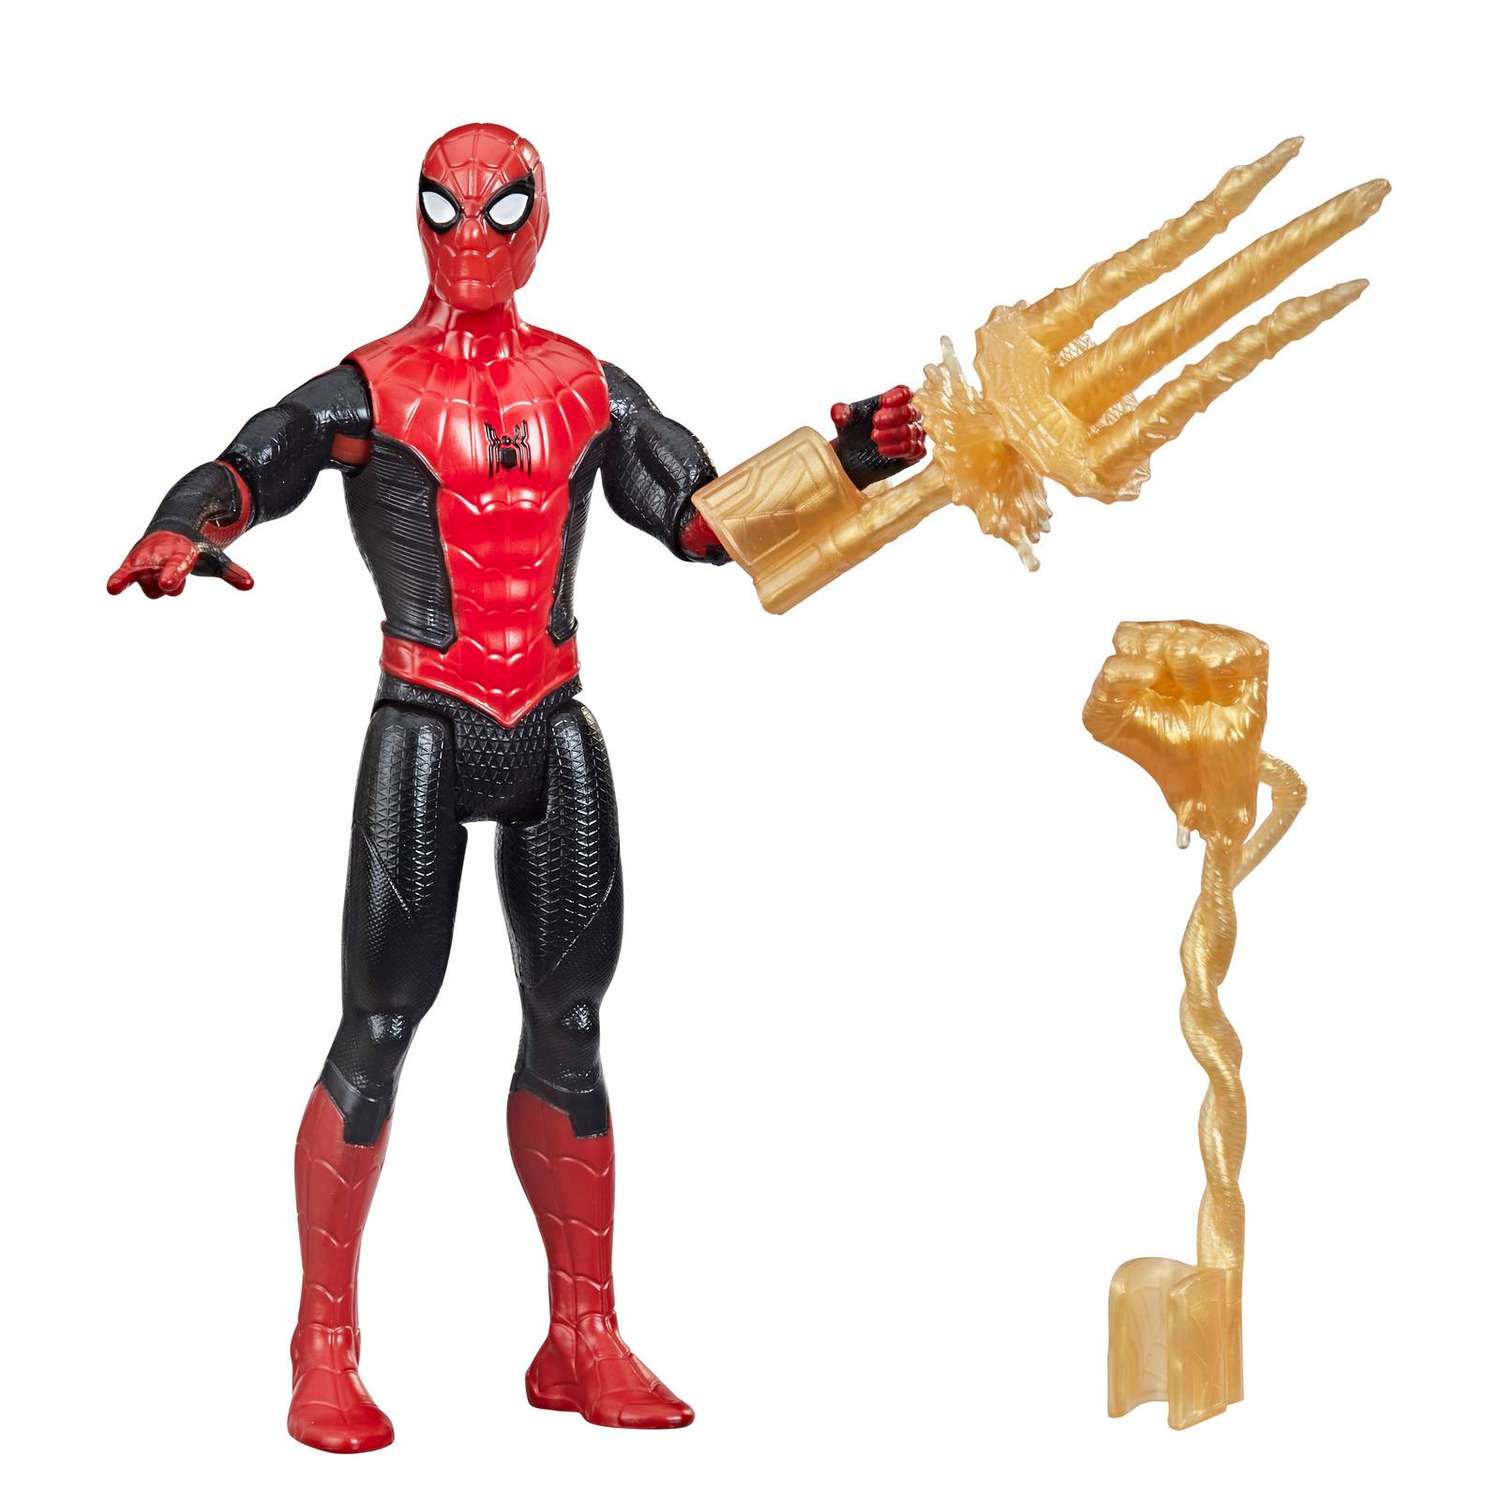 Фигурка Человек-Паук (Spider-man) Человек-паук Пионер с дополнительным элементом и аксессуаром F19125X0 - фото 1